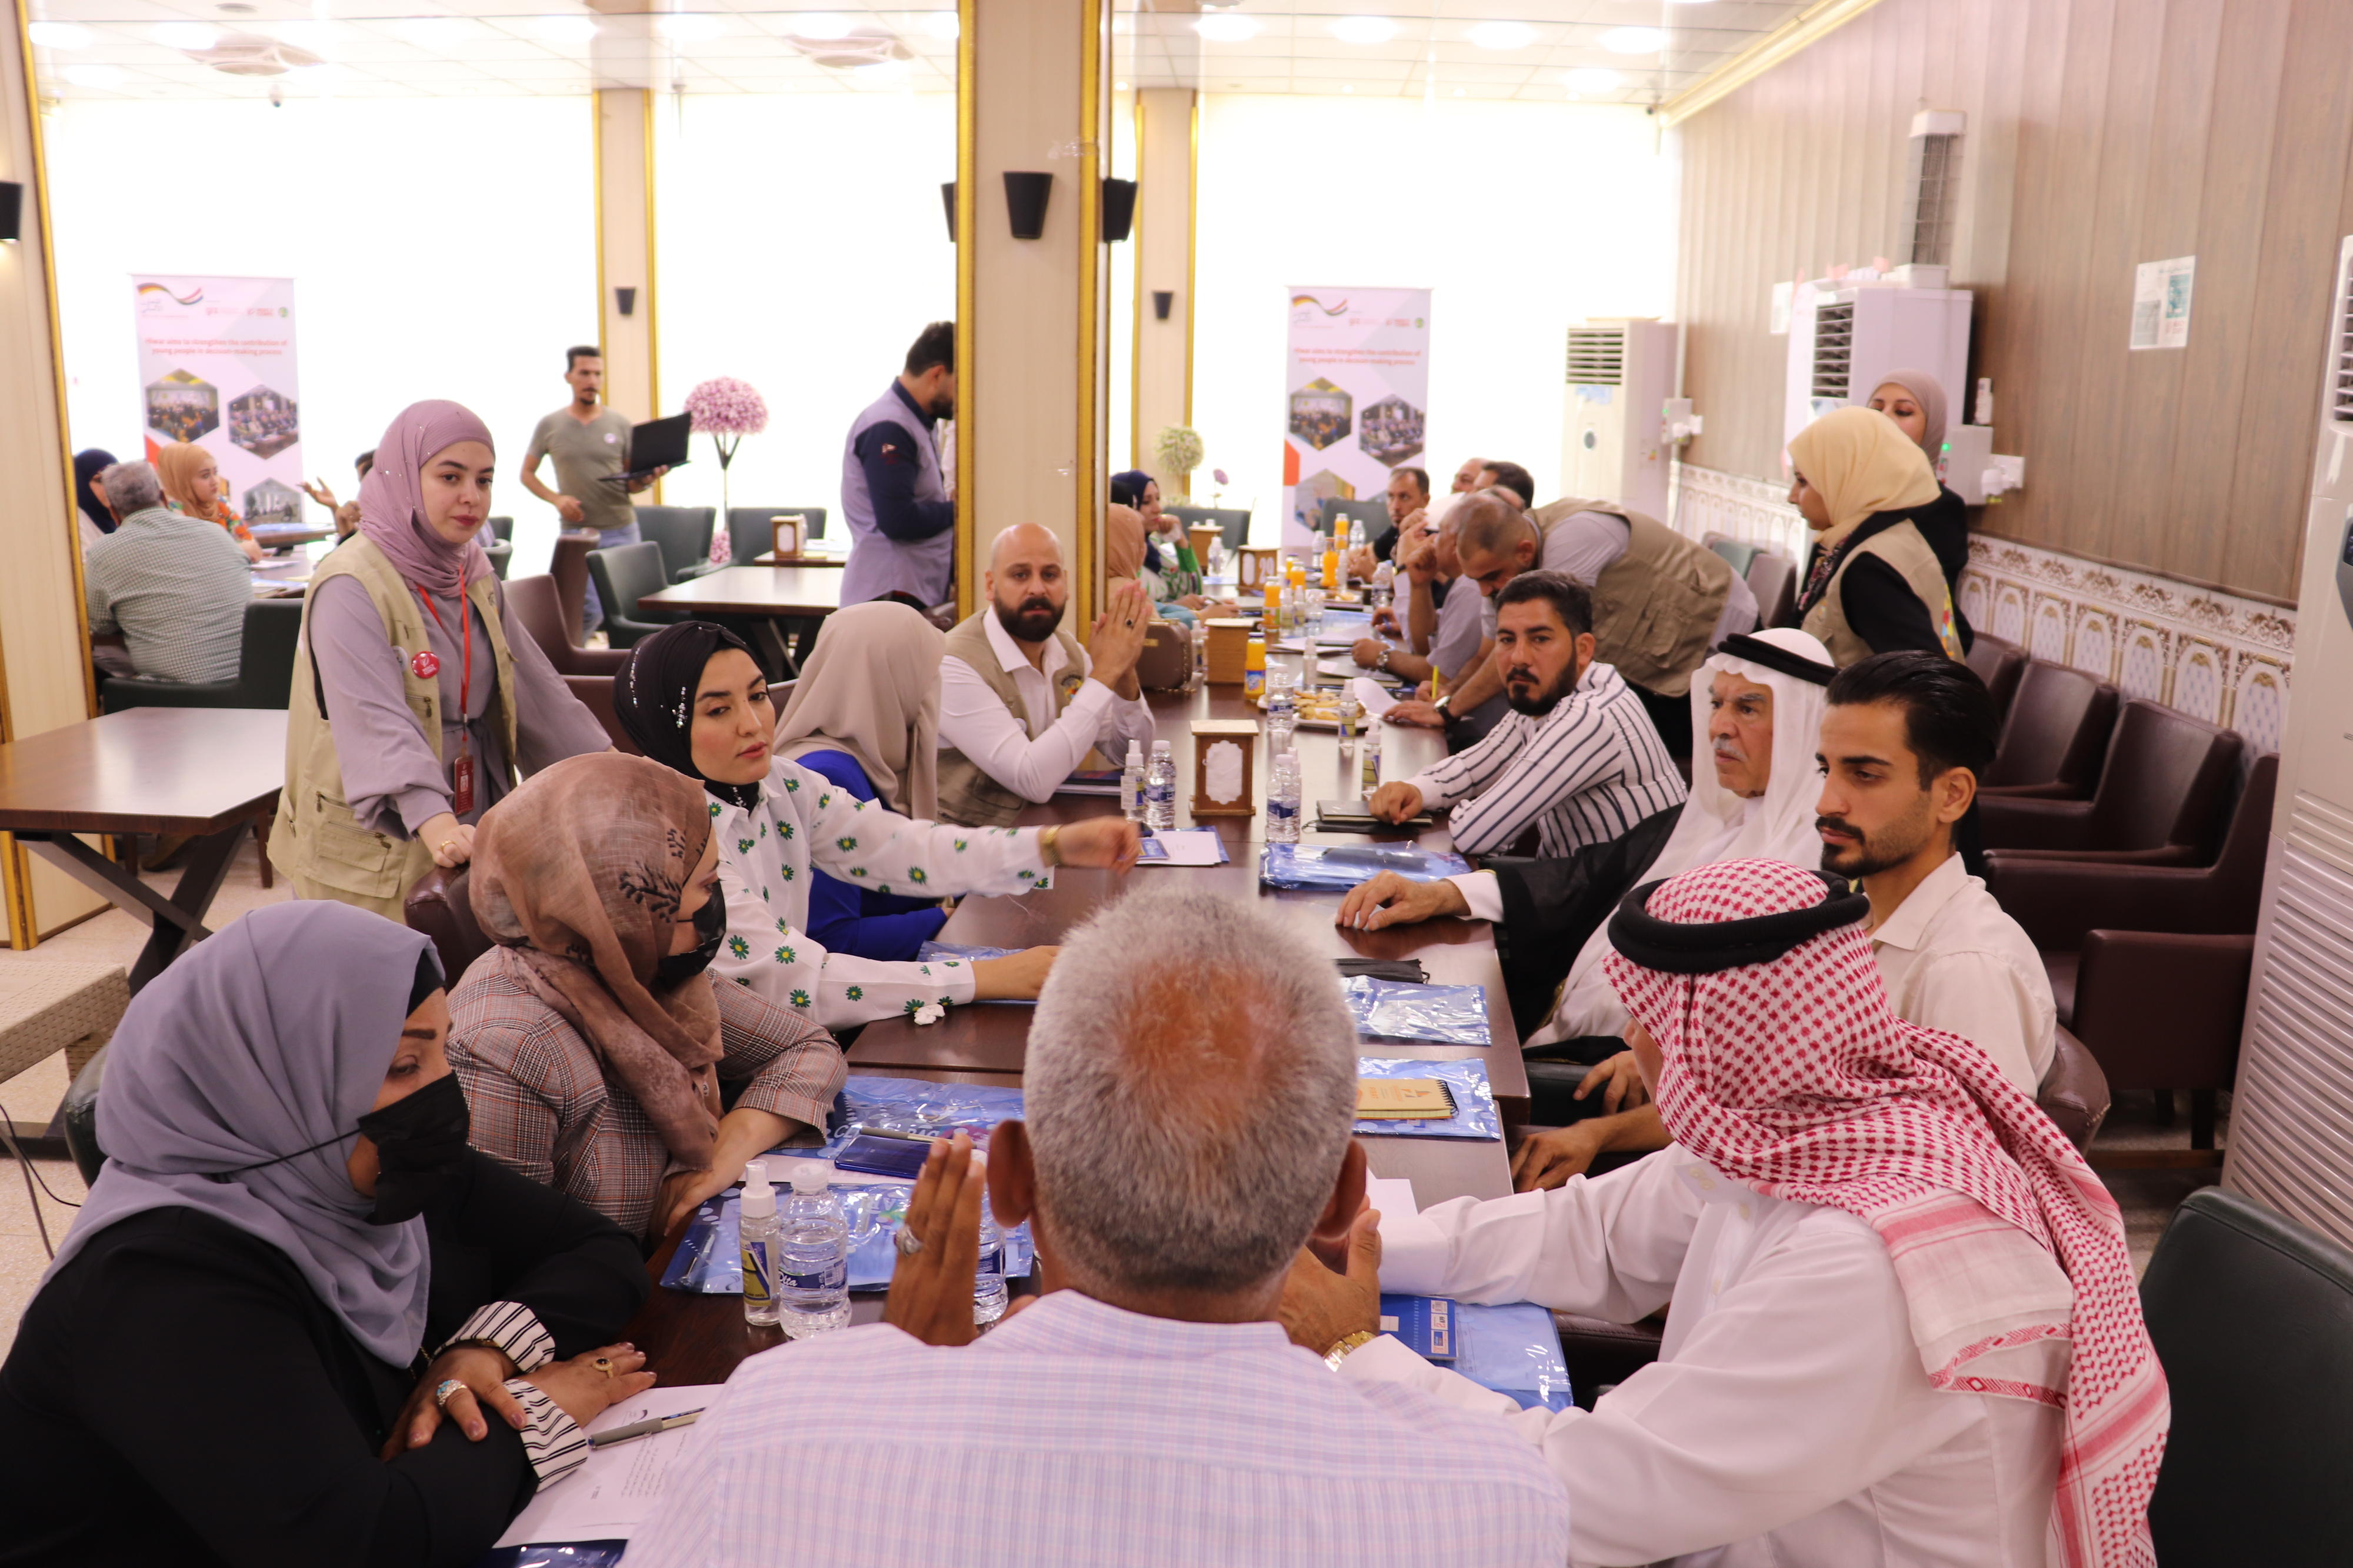 Vom BMZ geförderter Workshop mit zivilgesellschaftlichen Organisationen, lokalen Friedenskomitees und lokalen Regierungsvertreterinnen und -vertretern zu prioritären Bedarfen im Dienstleistungsbereich in Anbar, Irak 